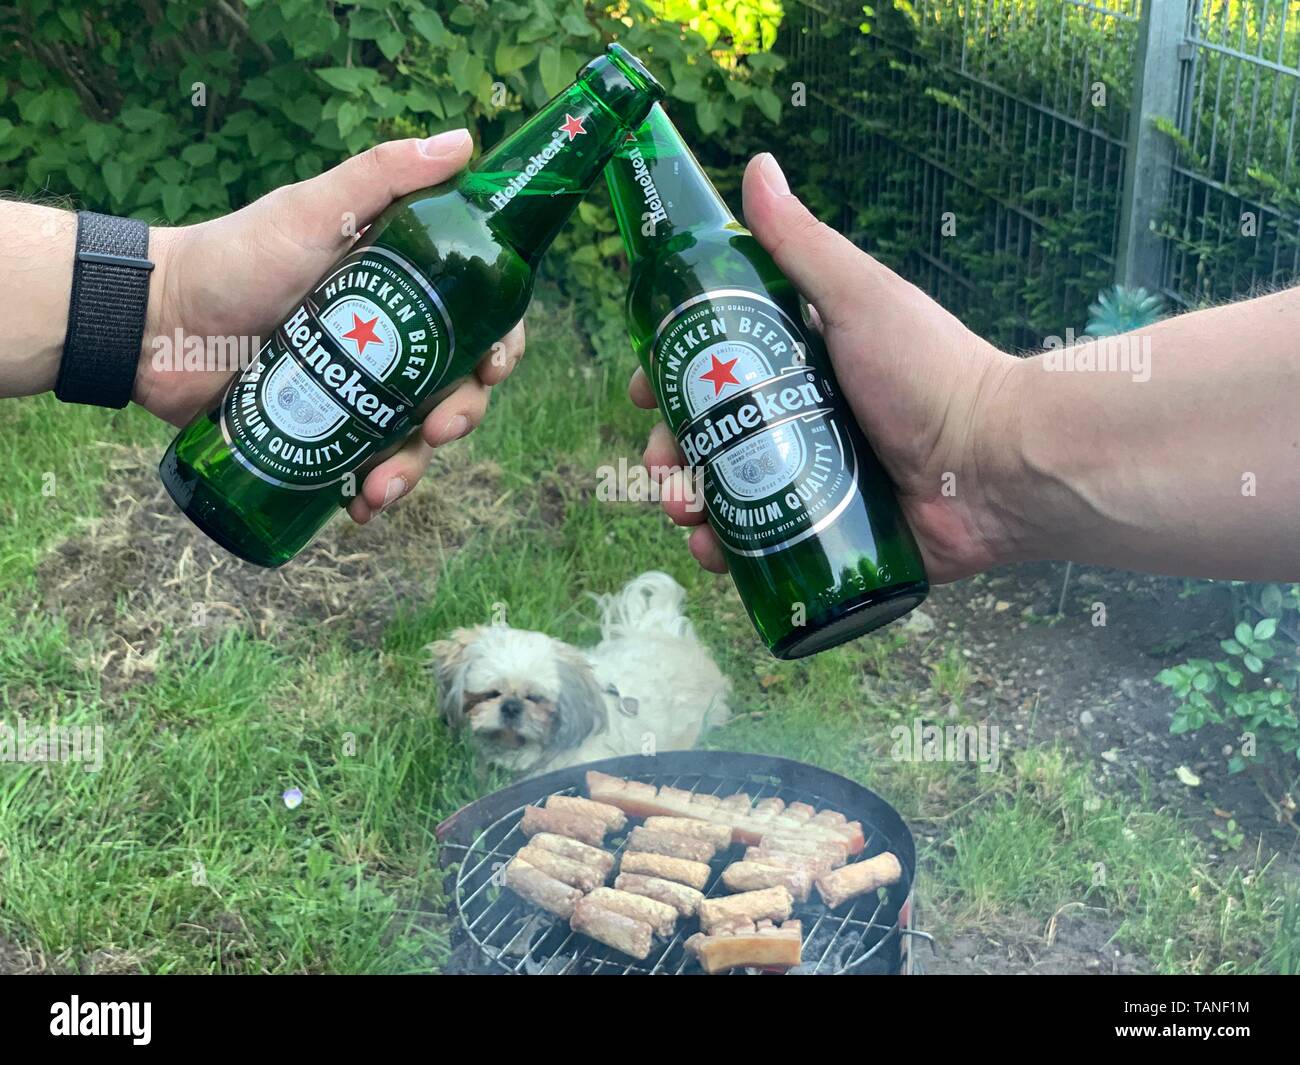 Brindando con cerveza Heineken Closeup manos capturar al partido de barbacoa en el jardín Foto de stock